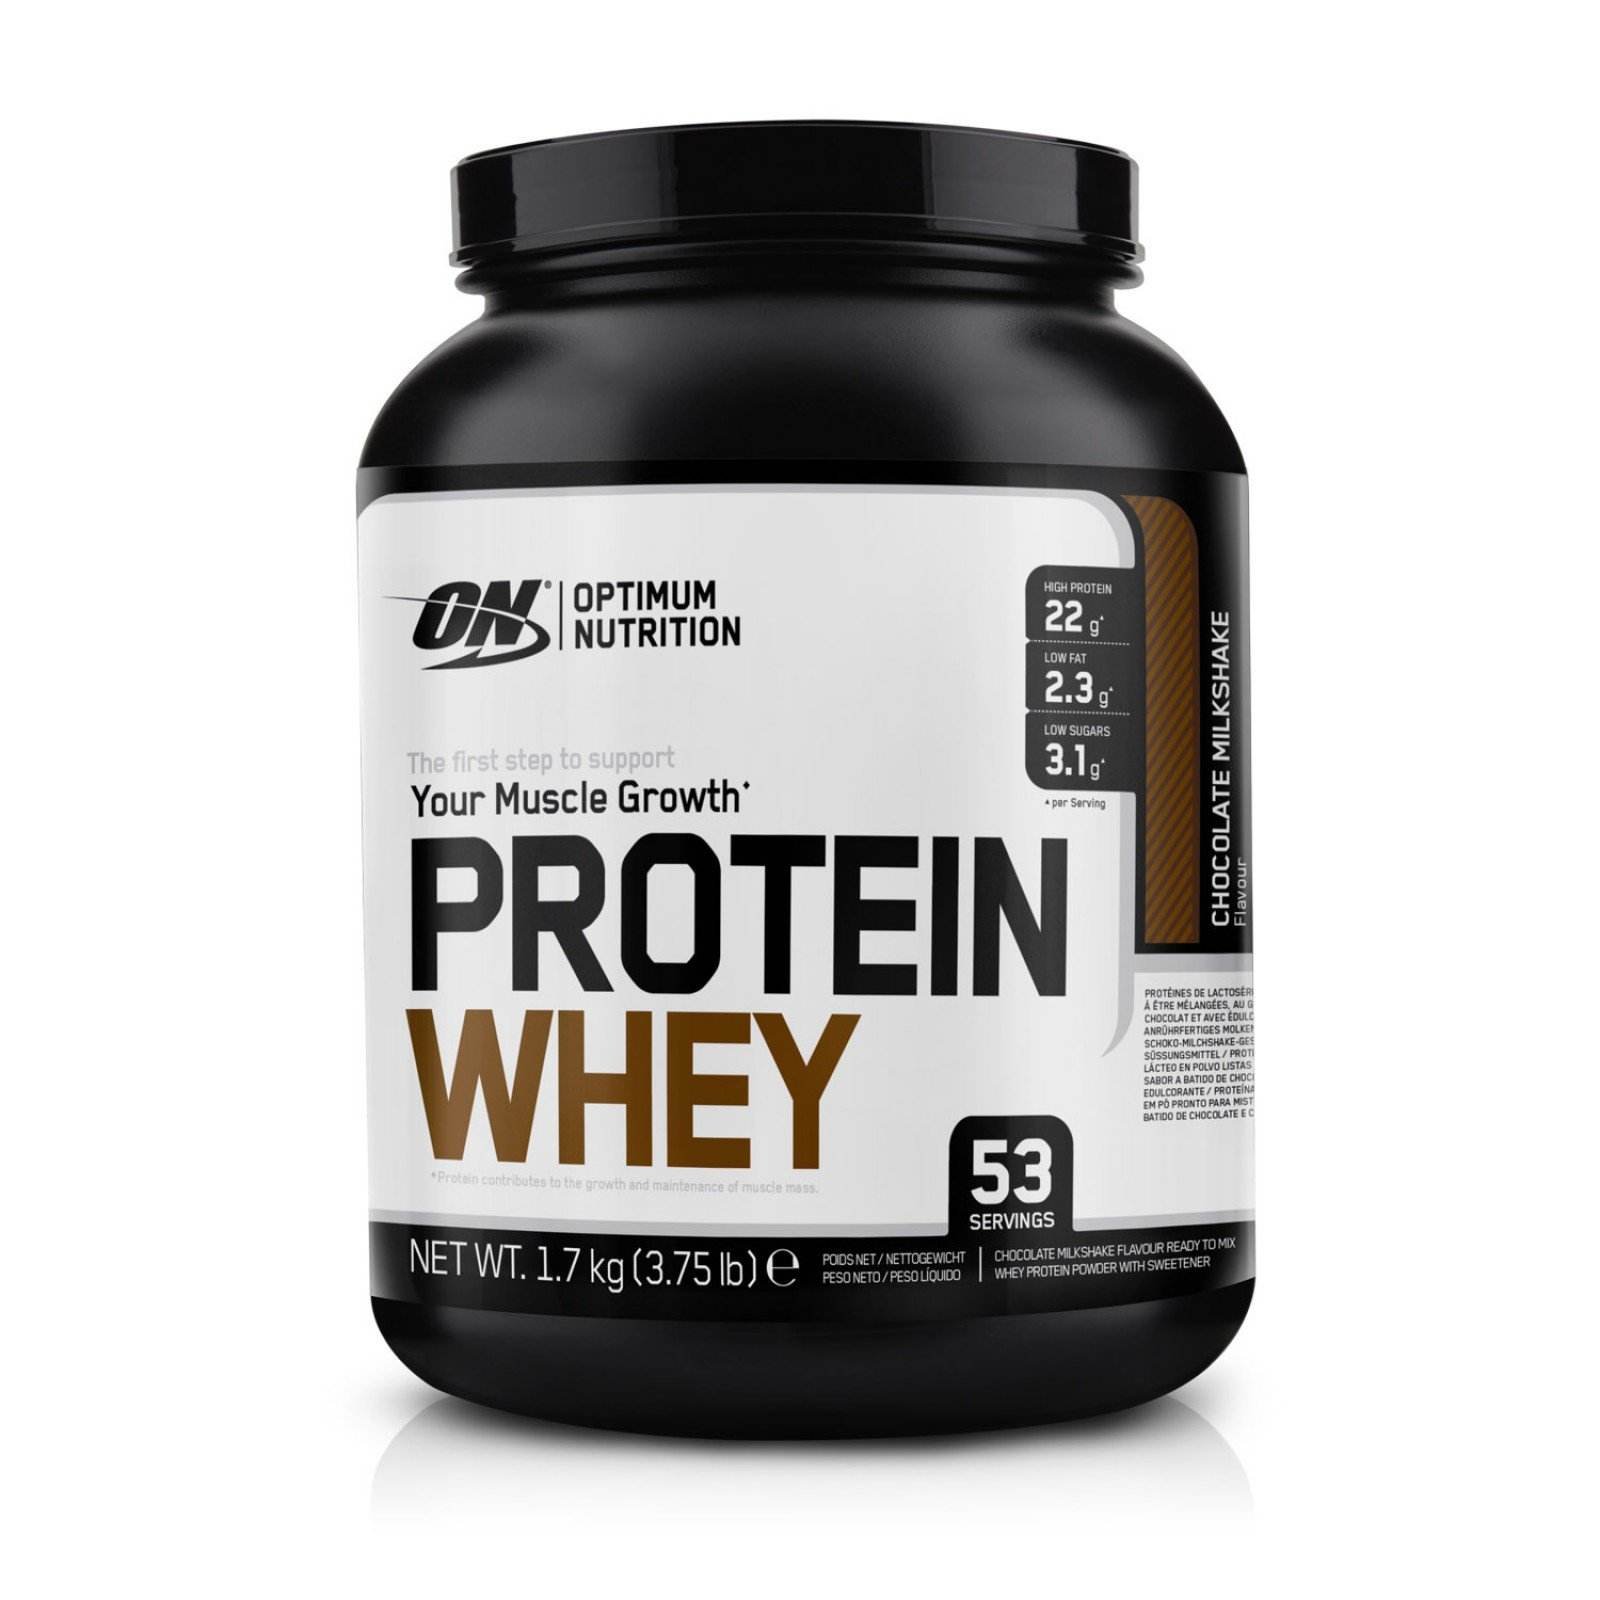 Протеин понижен. Whey Protein Optimum Nutrition. Optimum Nutrition для женщин протеин. Platinum Whey протеин Gold Standard. Протеин Whey Optimum Nutrition.